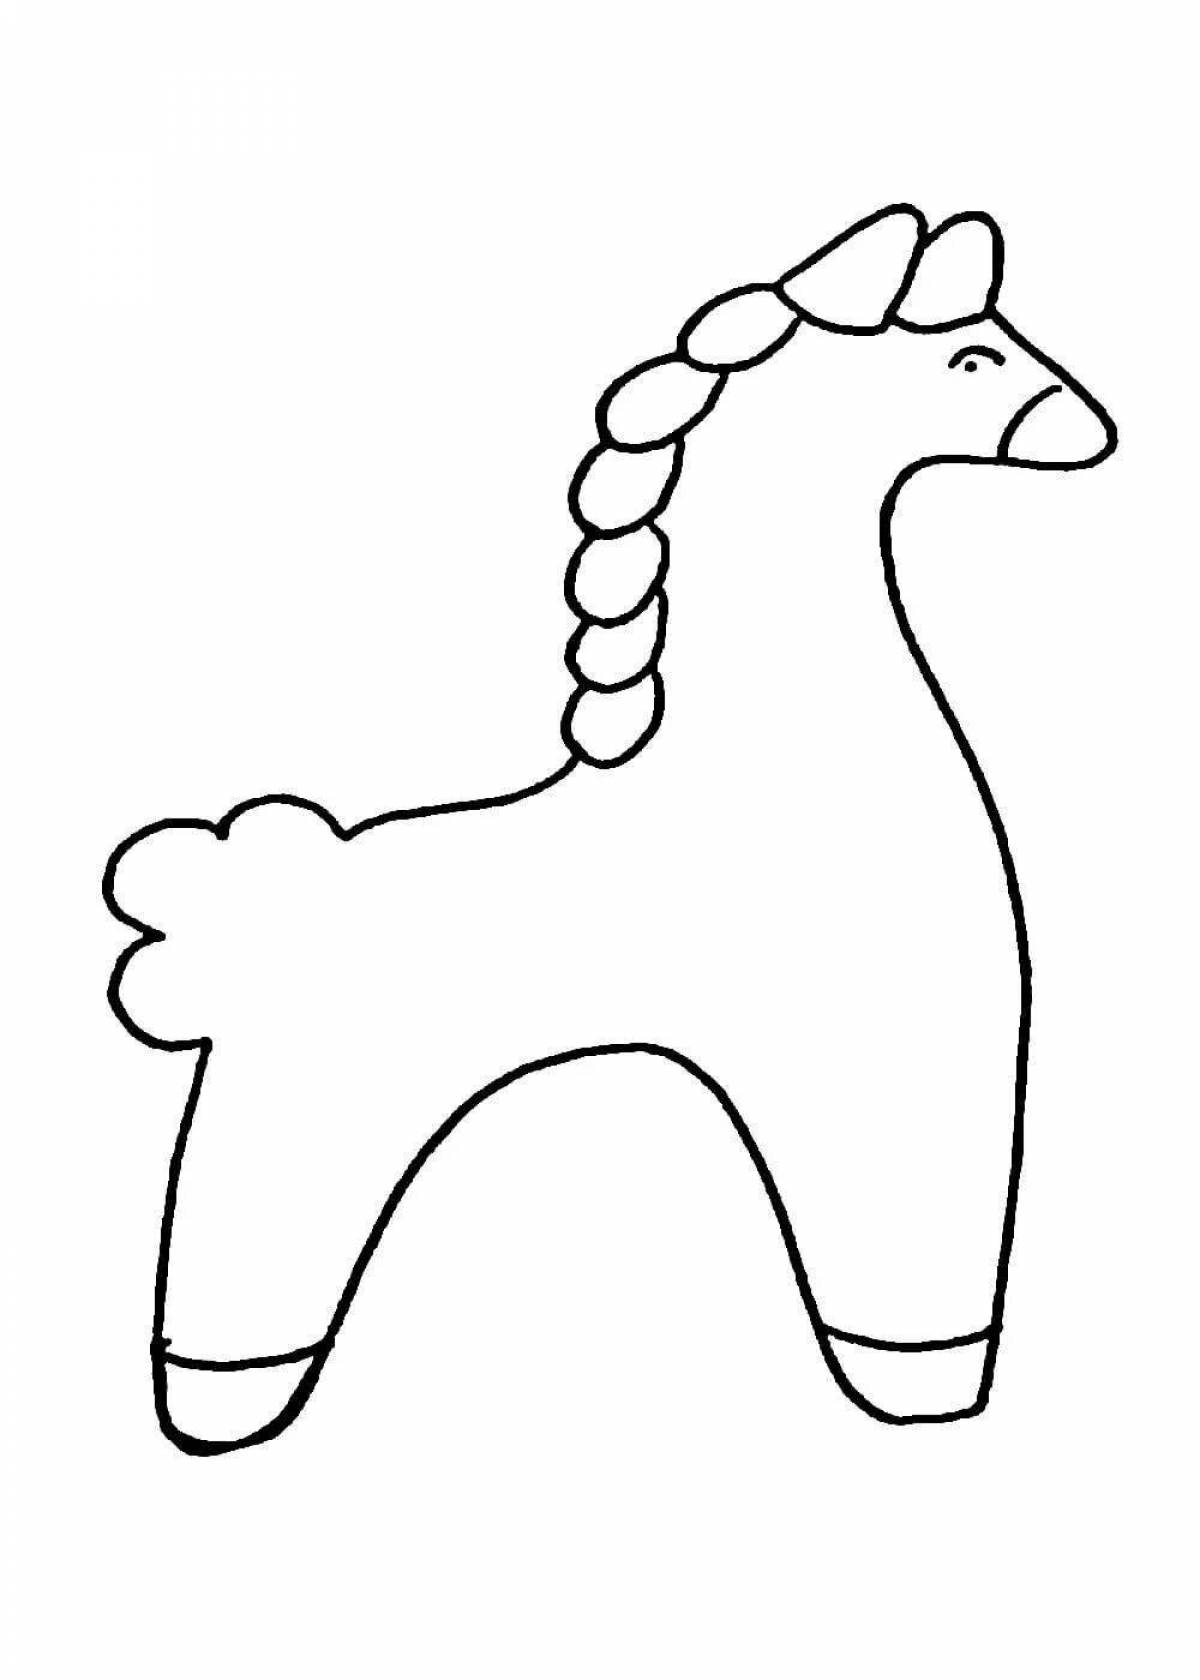 Фото Раскраска лучистая филимоновская лошадь